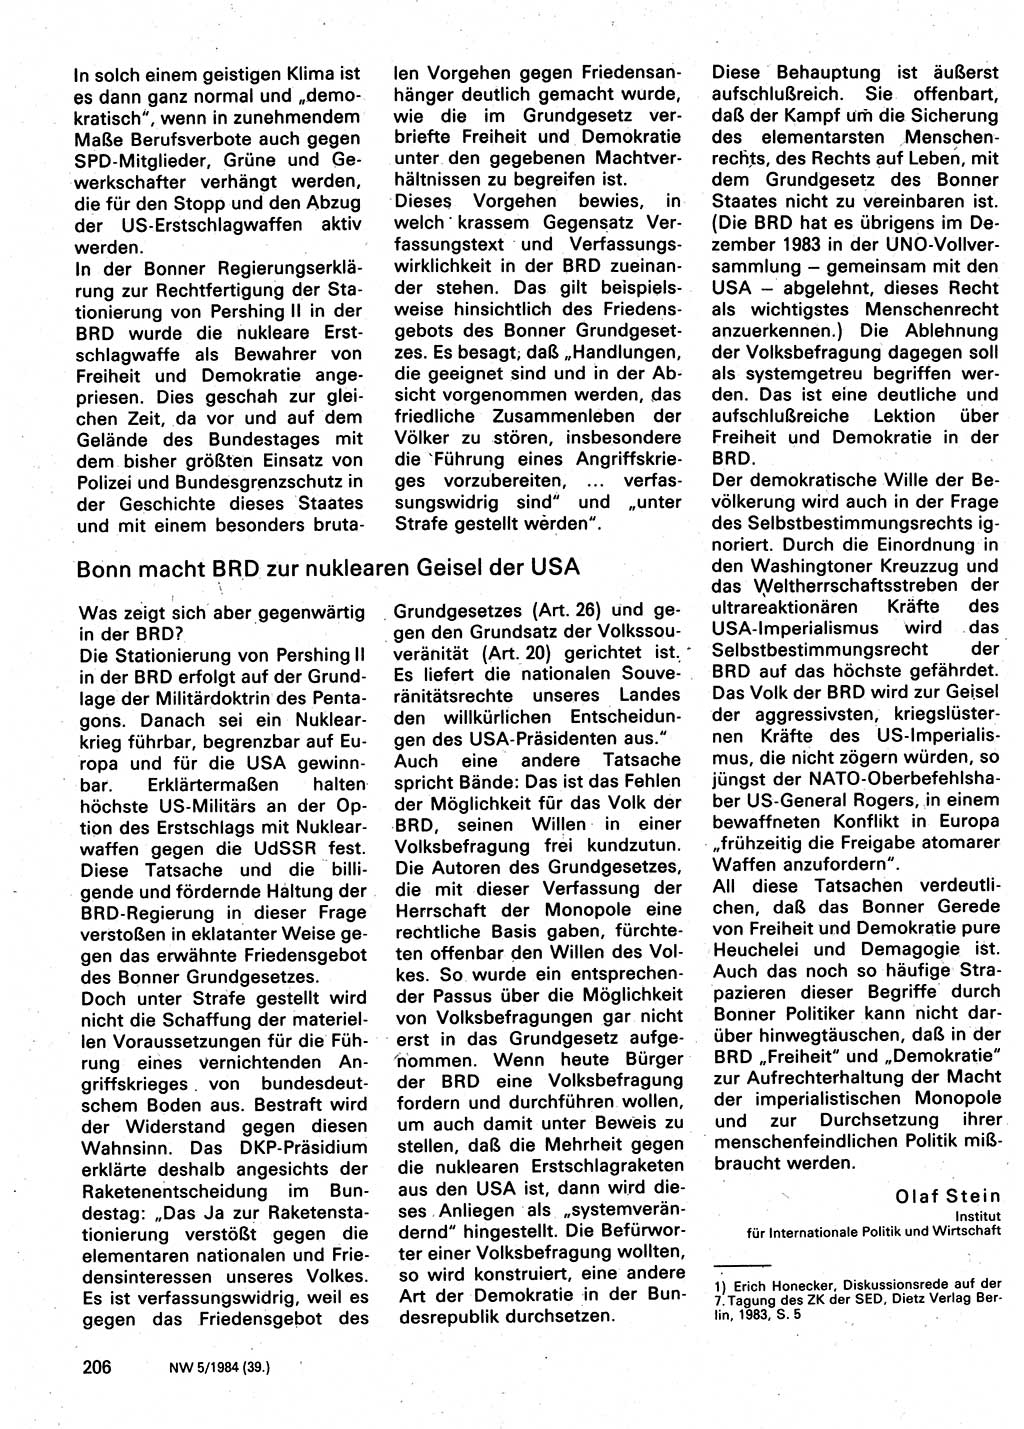 Neuer Weg (NW), Organ des Zentralkomitees (ZK) der SED (Sozialistische Einheitspartei Deutschlands) für Fragen des Parteilebens, 39. Jahrgang [Deutsche Demokratische Republik (DDR)] 1984, Seite 206 (NW ZK SED DDR 1984, S. 206)